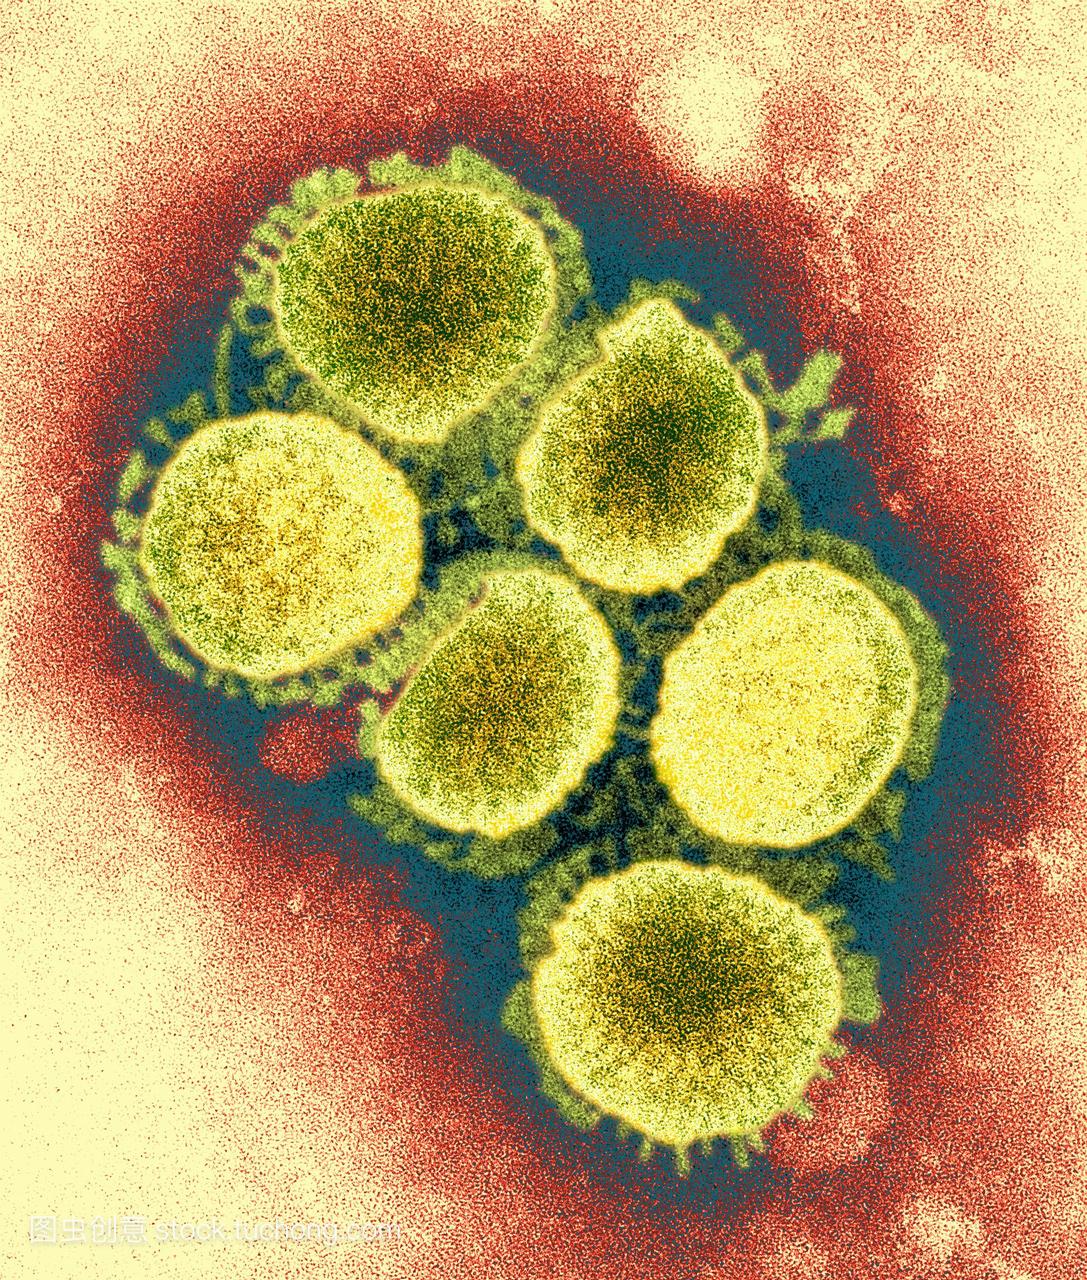 h1n1猪流感病毒。从2009年4月起爆发的猪流感